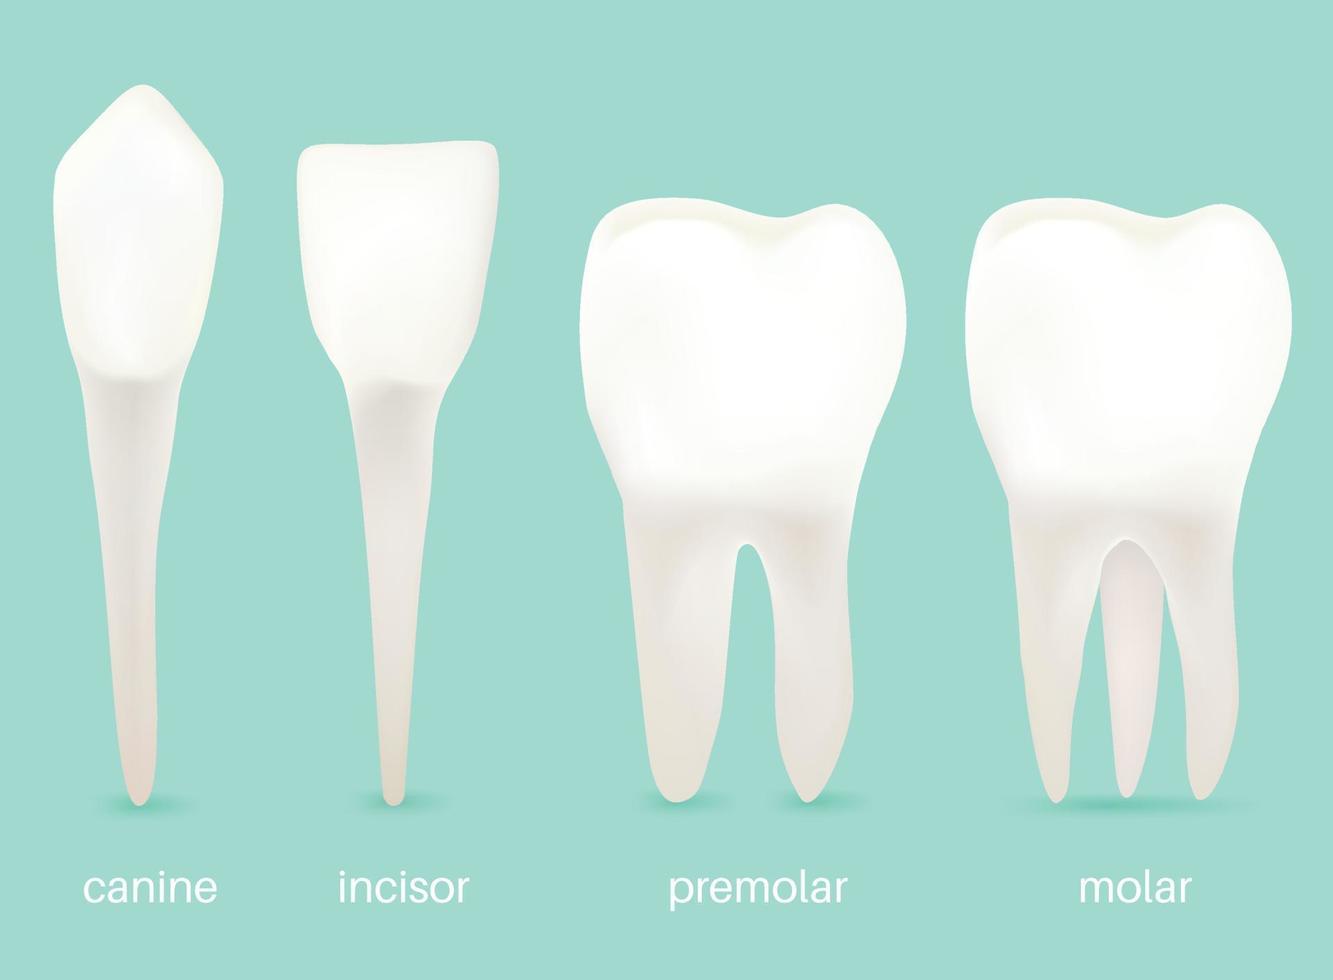 de 4 types van tanden. vector